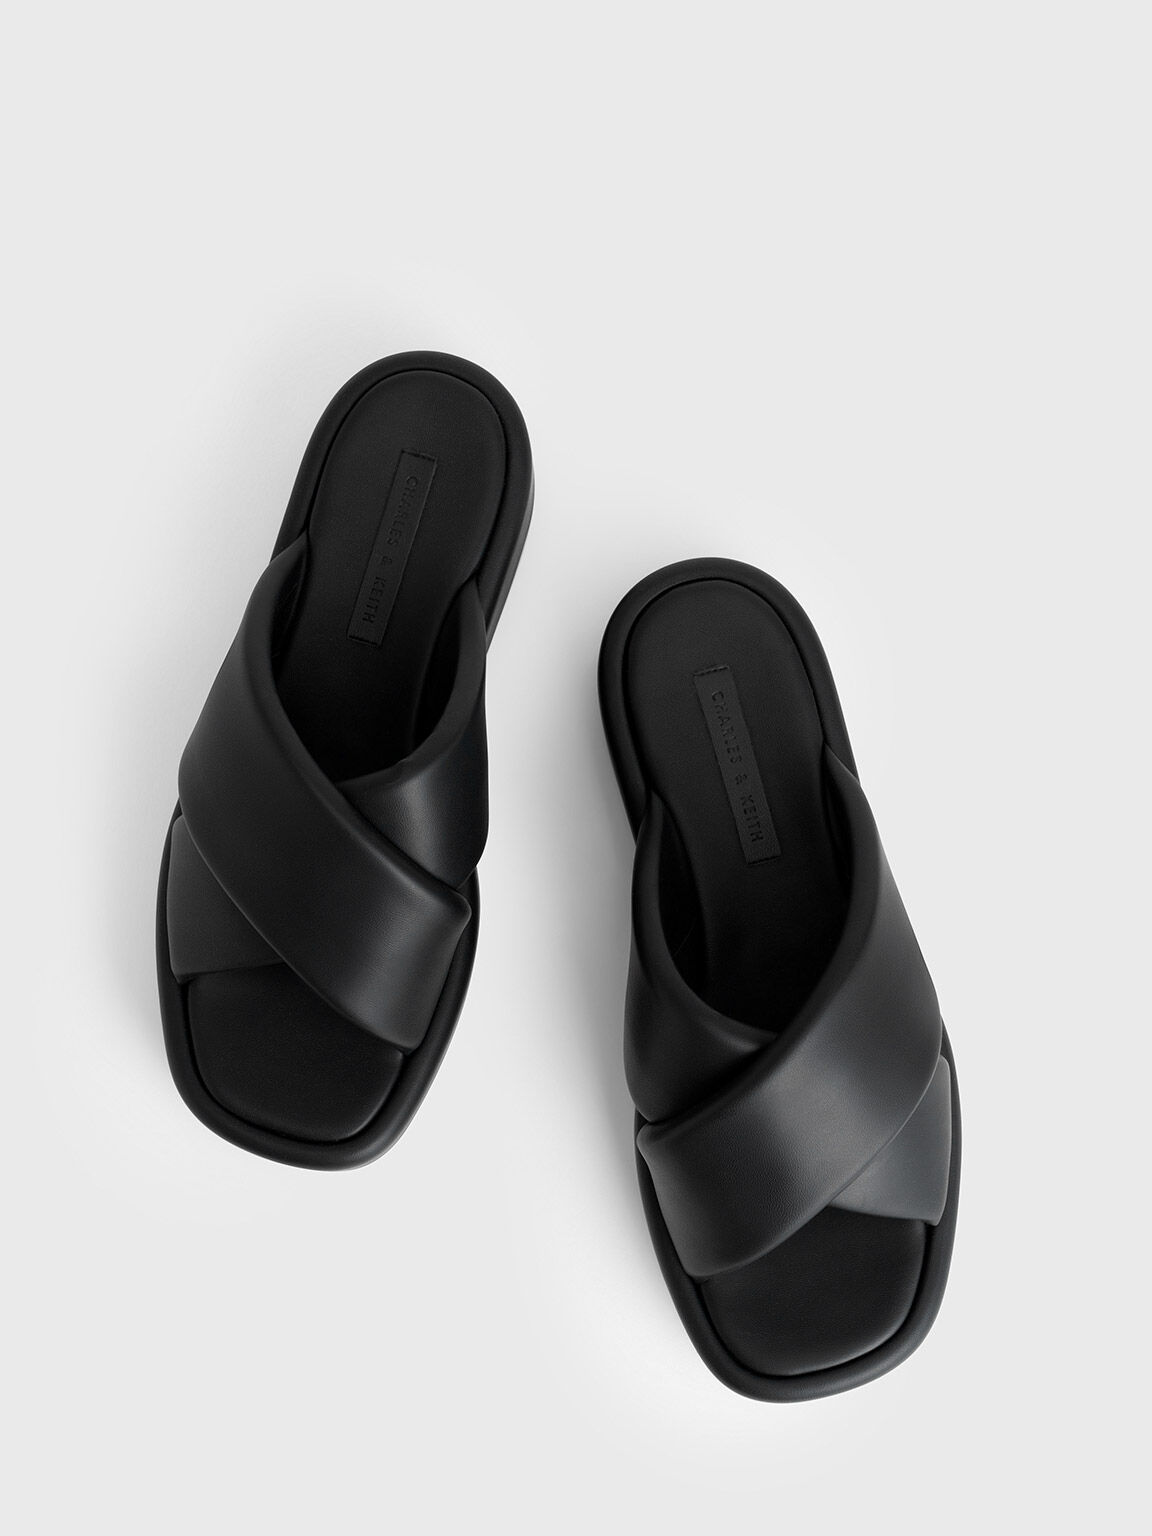 Crossover Platform Sandals, Black, hi-res